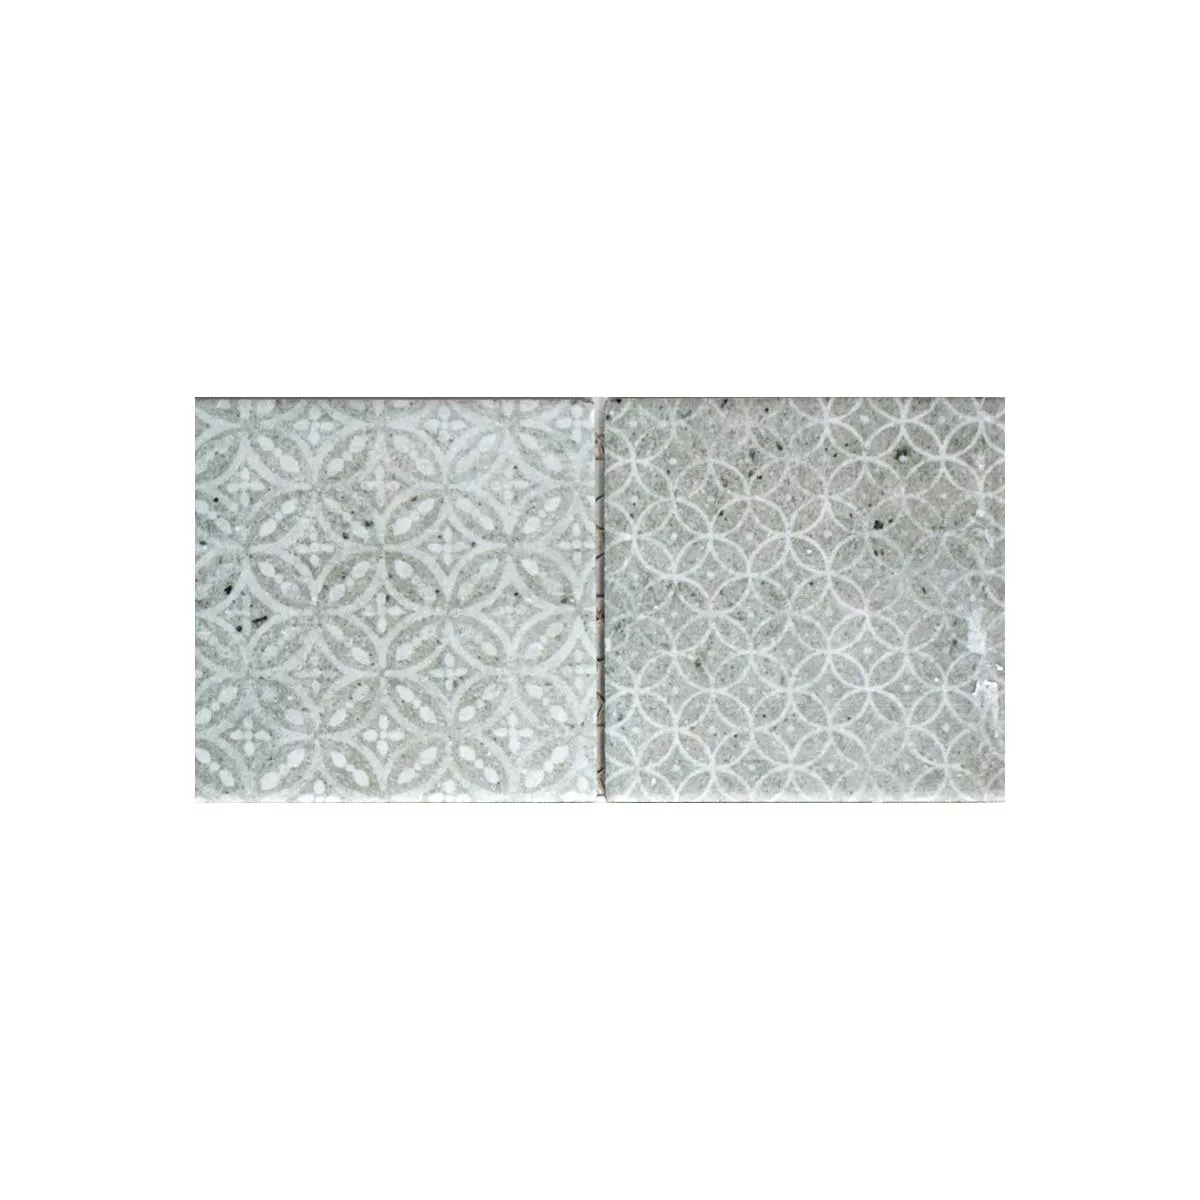 Campione Ceramica Mosaico Campeche Ottica Di Cemento Grigio